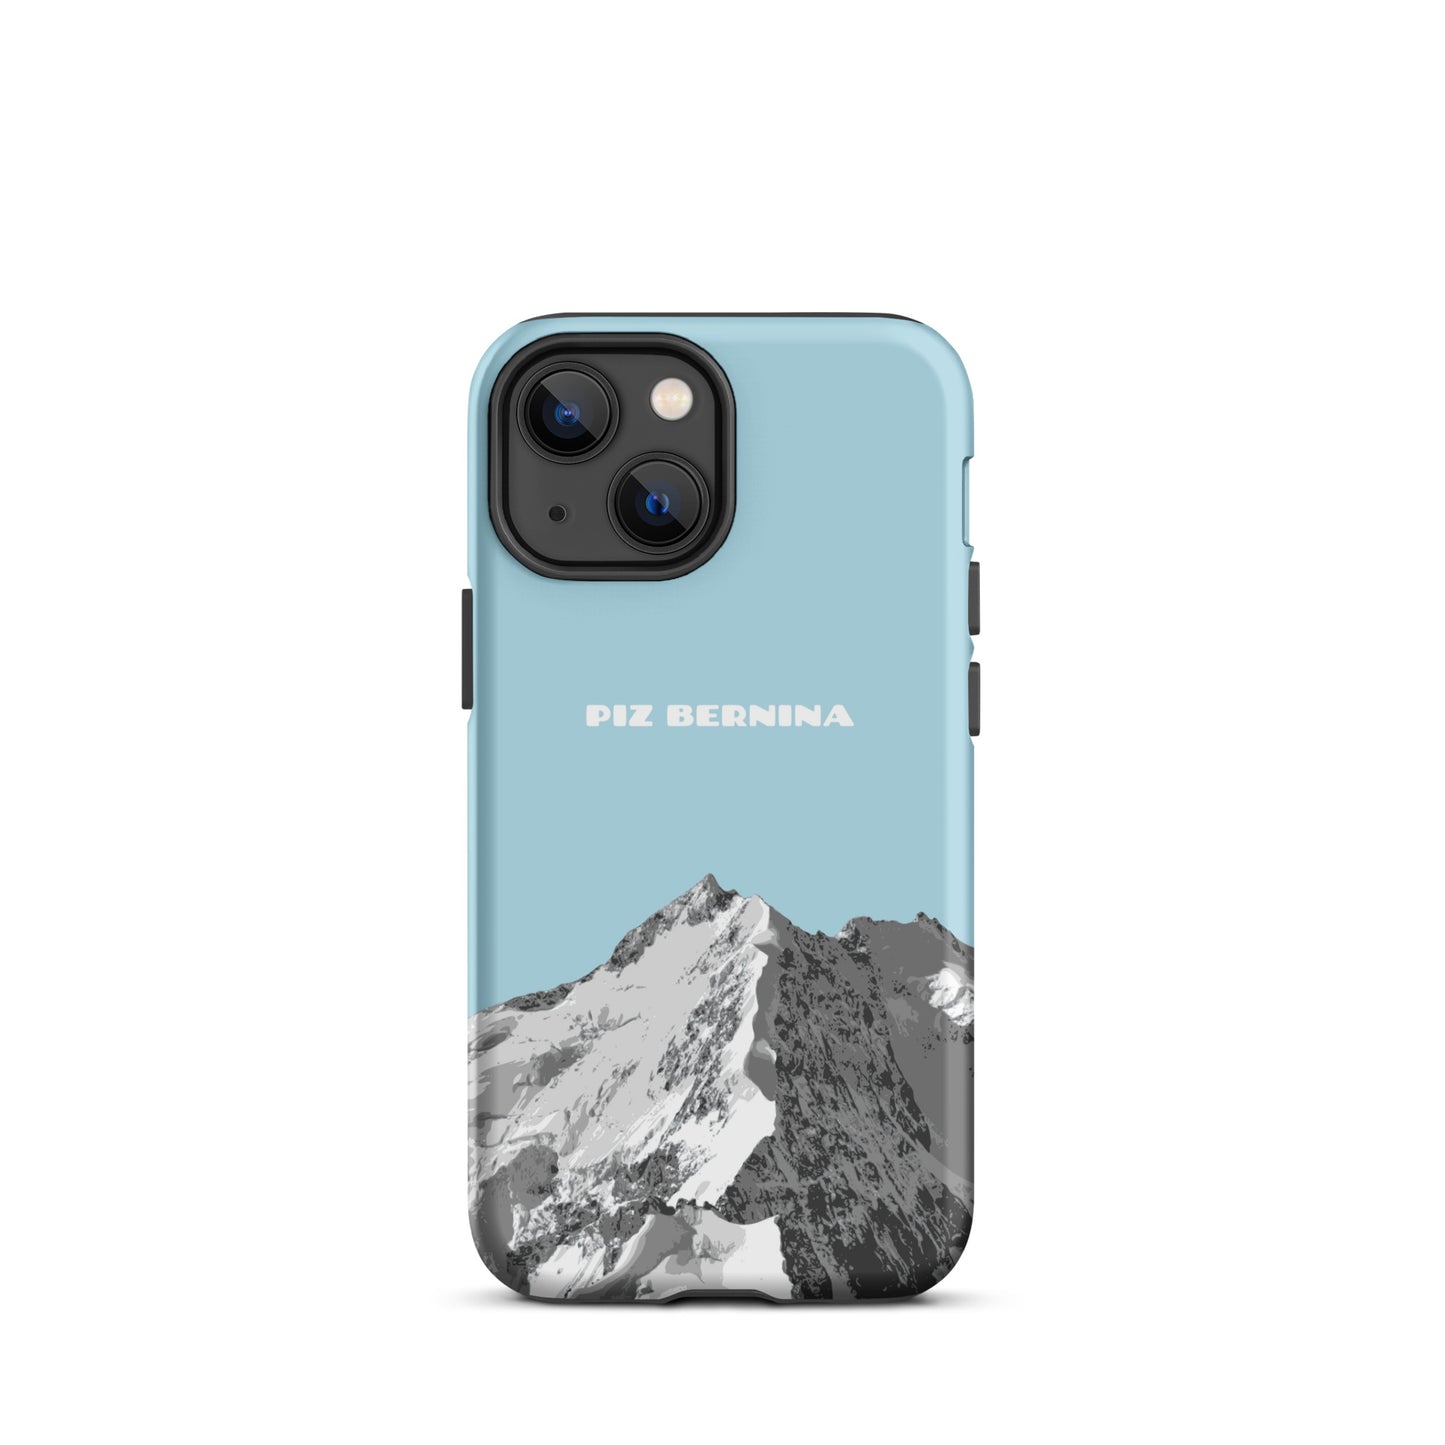 Hülle für das iPhone 13 Mini von Apple in der Farbe Hellblau, dass den Piz Bernina in Graubünden zeigt.